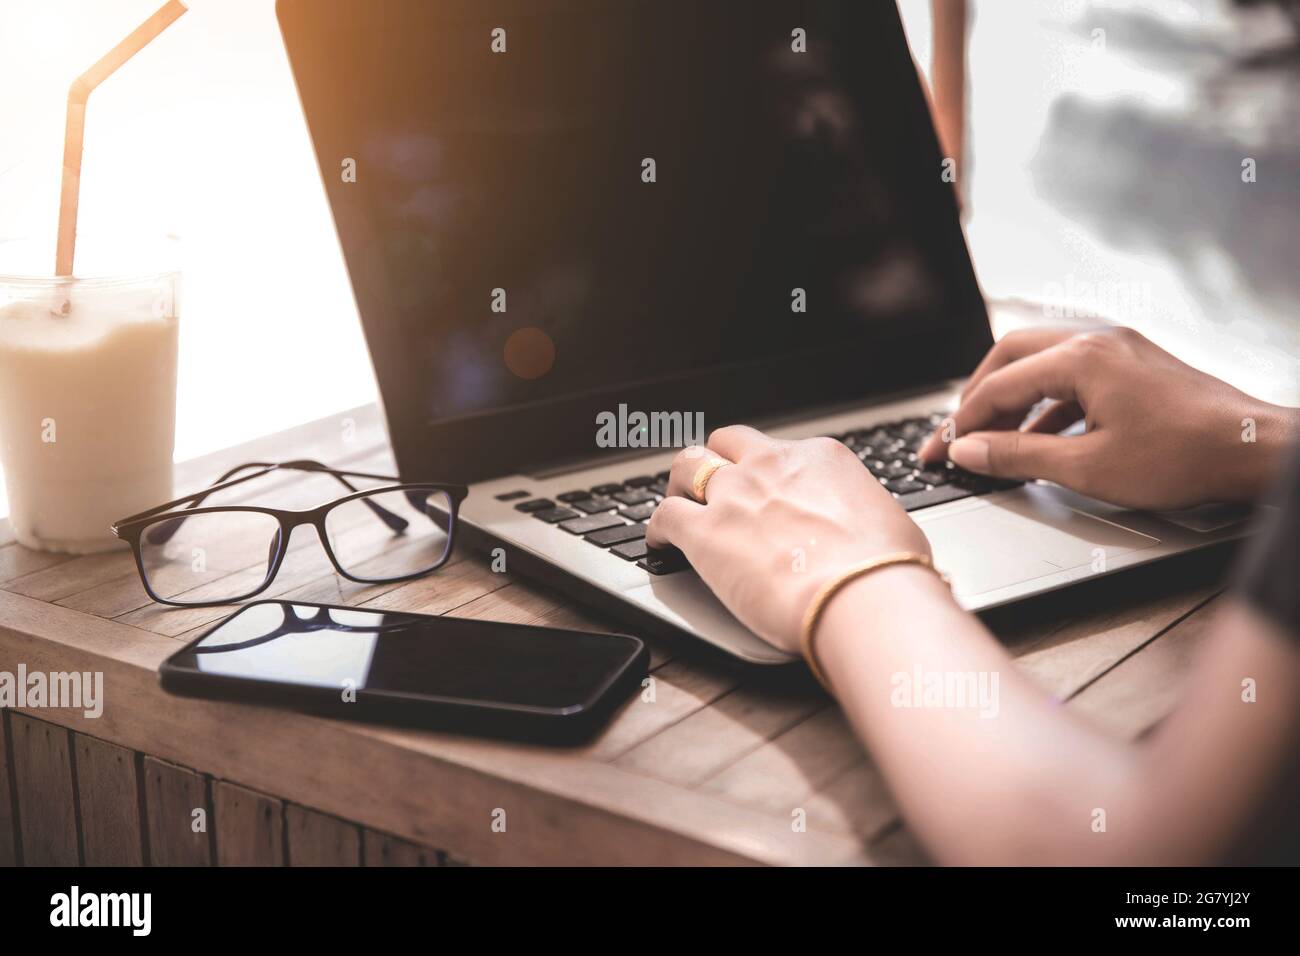 Travail en ligne, jeune femme travaillant dans un bureau à domicile. Concept de travail à distance Banque D'Images